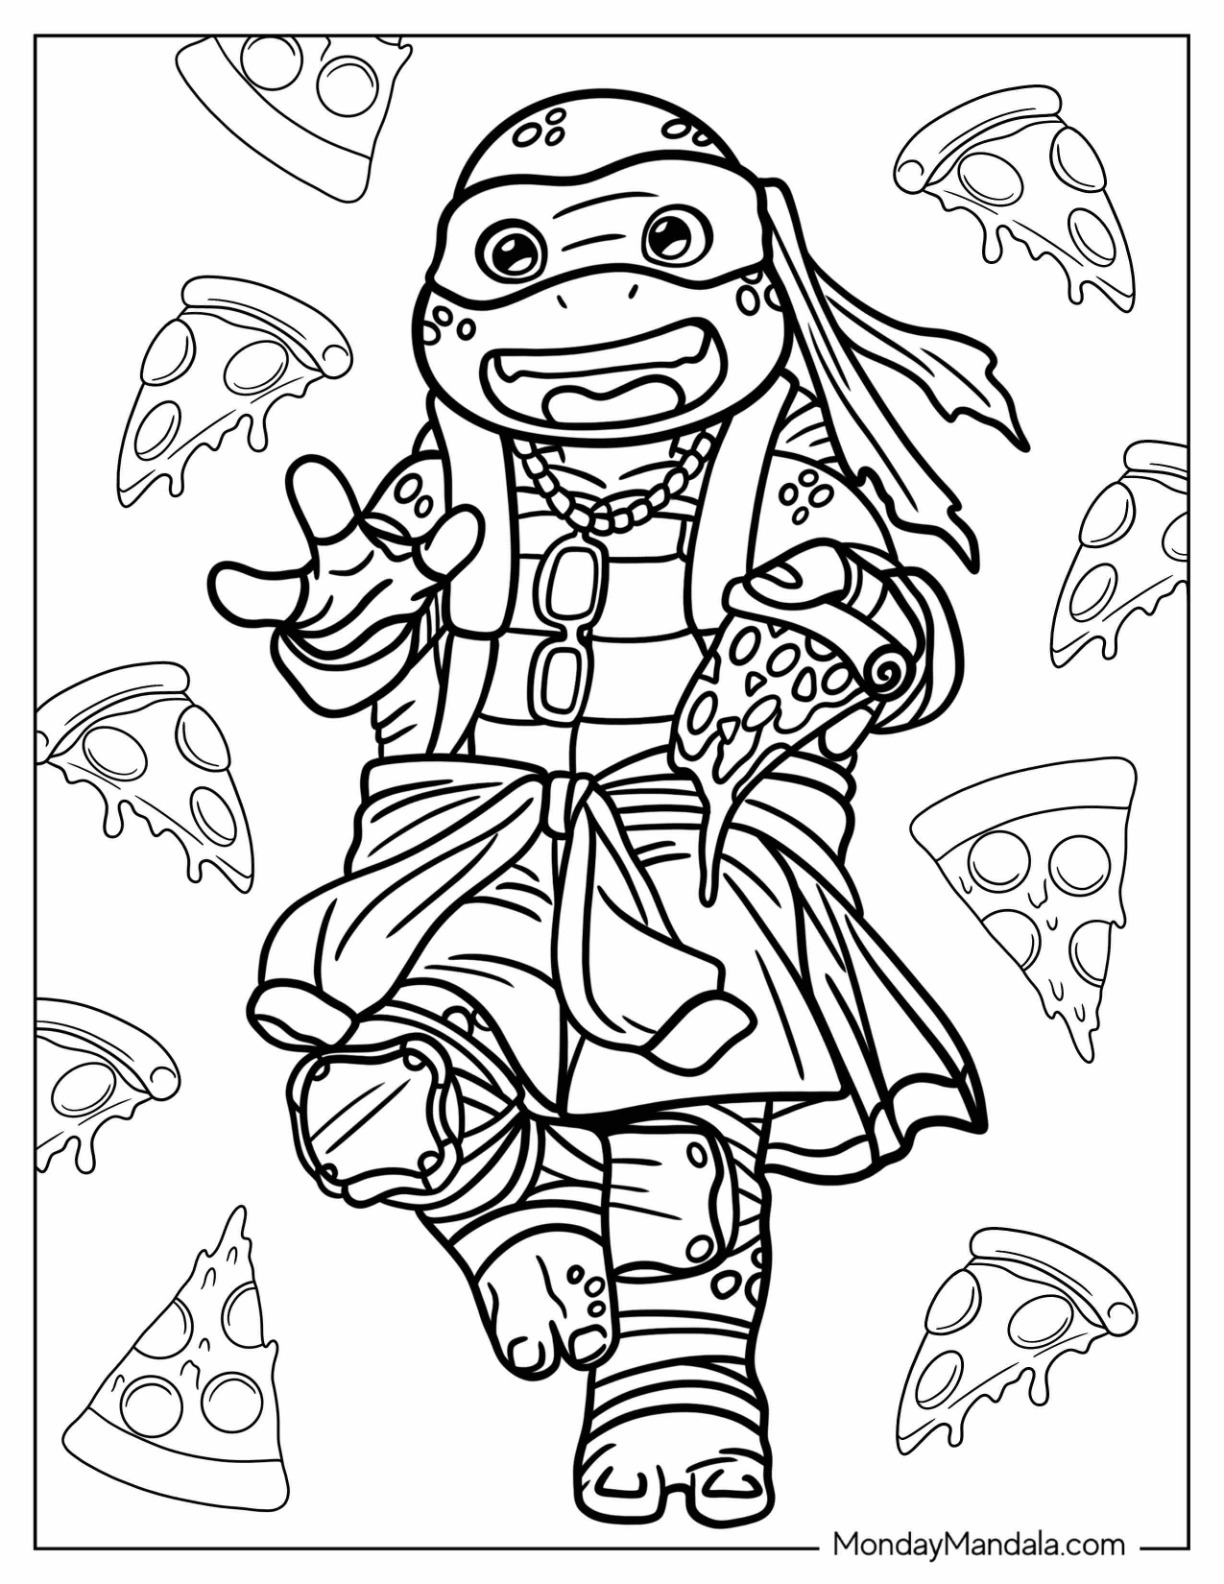 Ninja turtles coloring pages free pdf printables